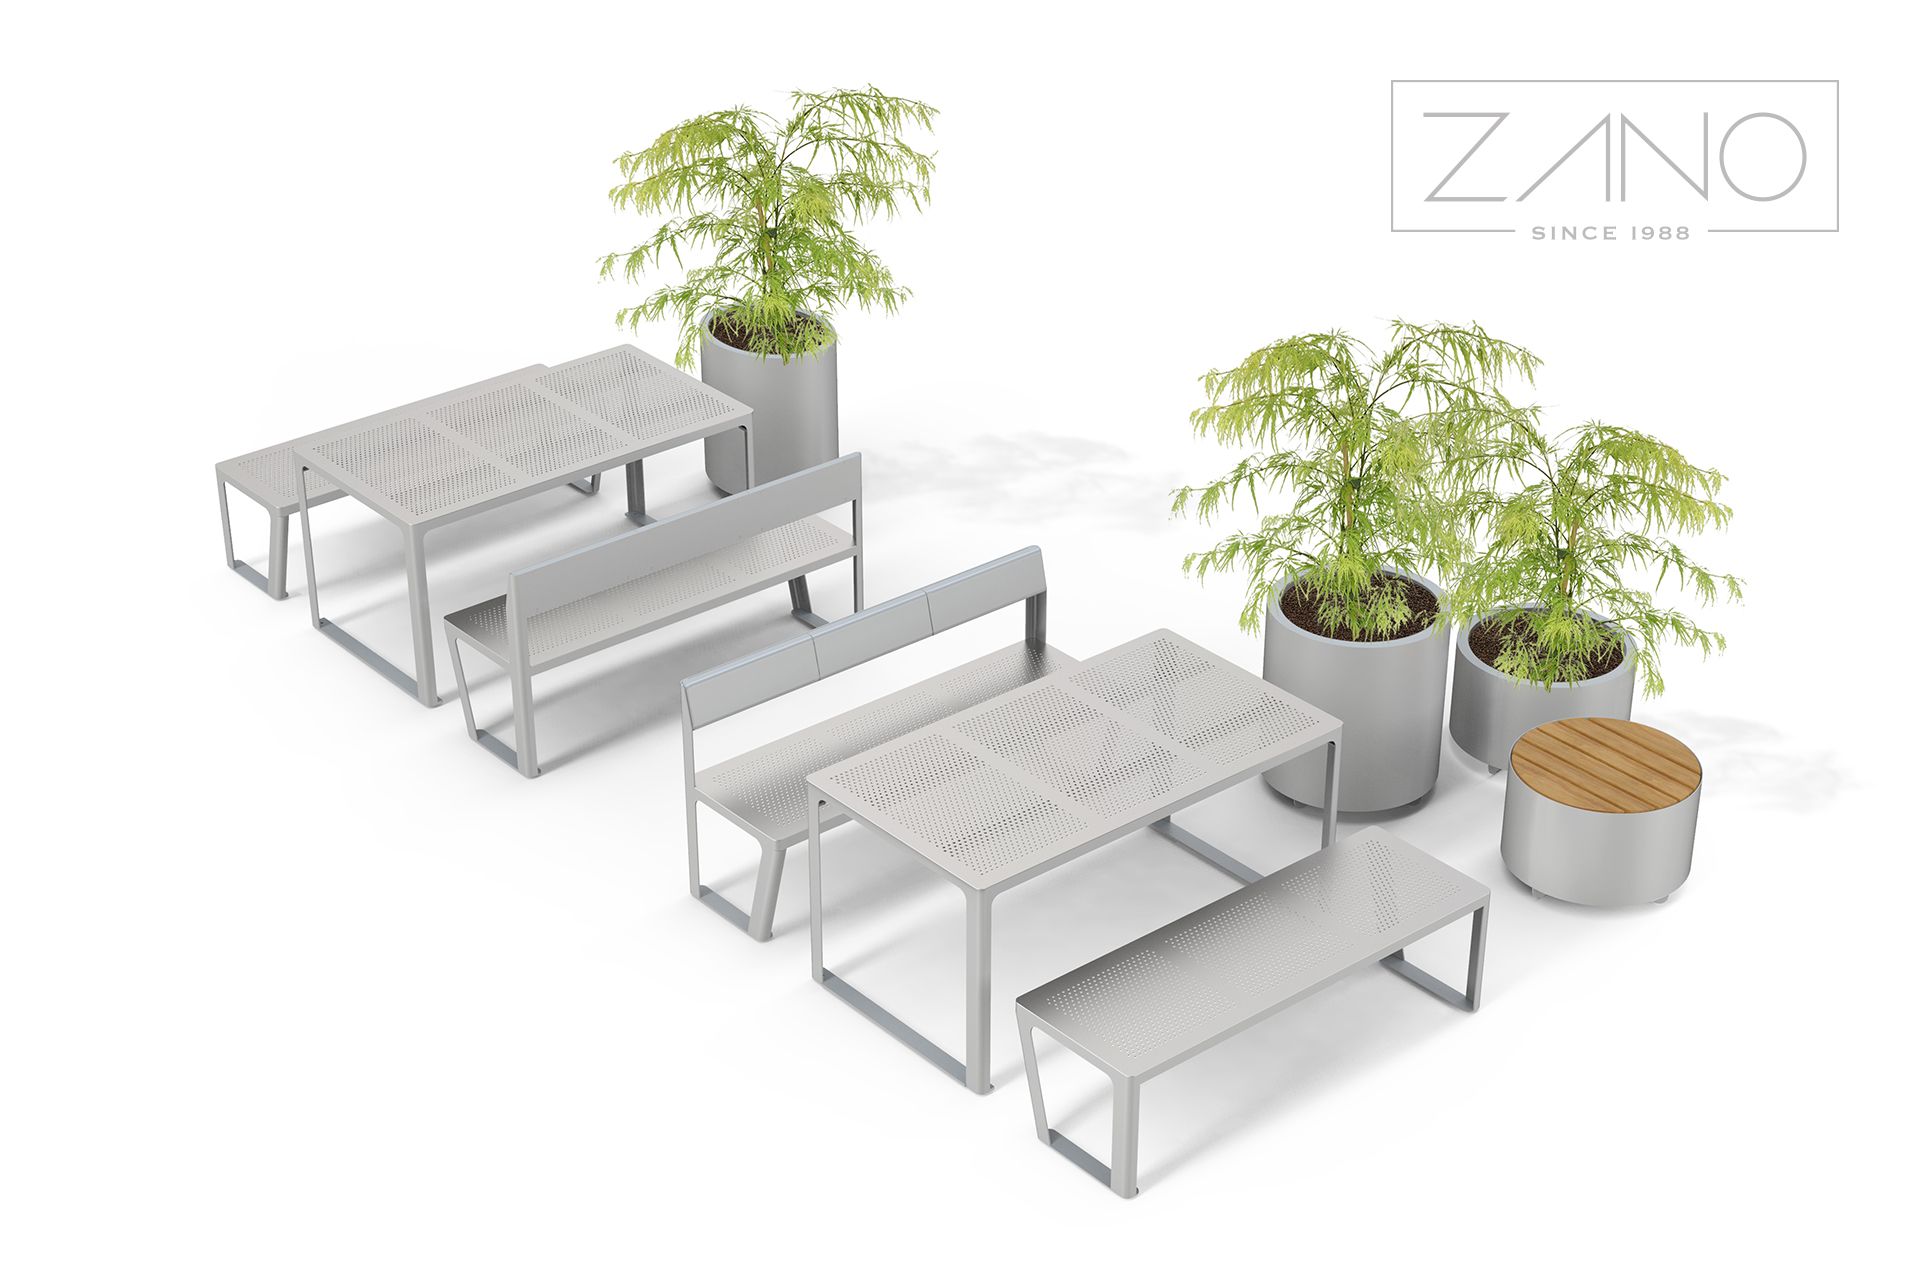 Masă și bănci urbane de la zano urban furniture